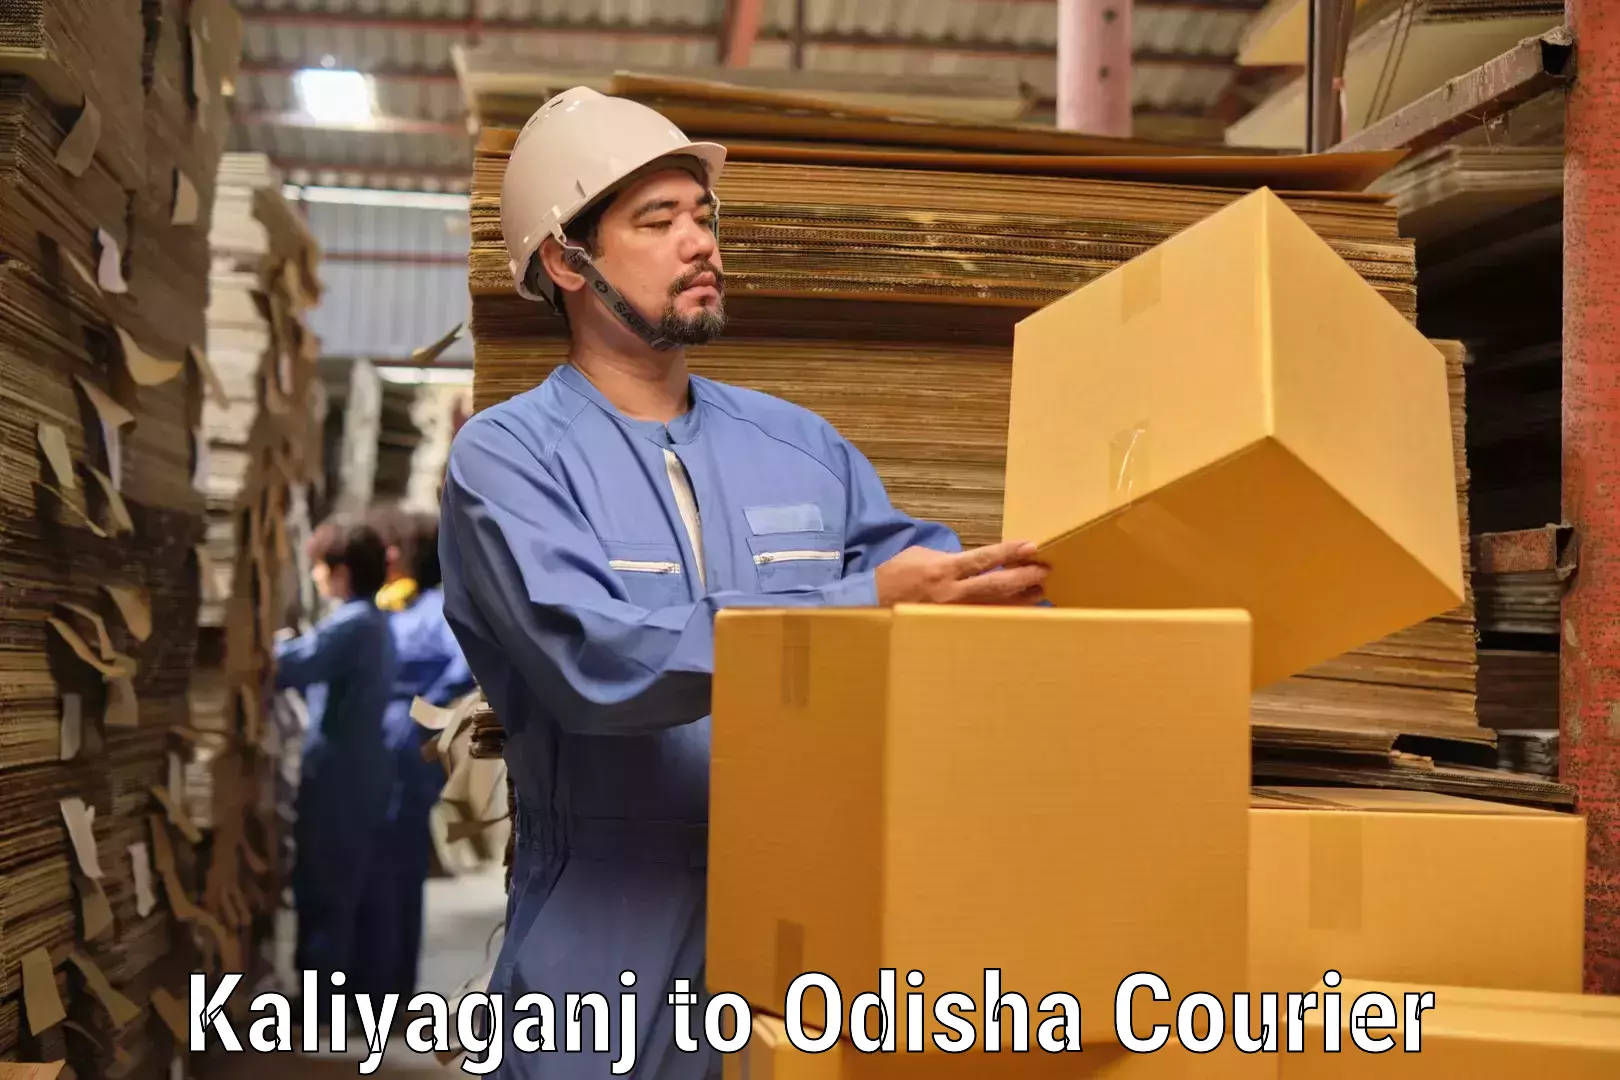 Customer-centric shipping Kaliyaganj to Mohana